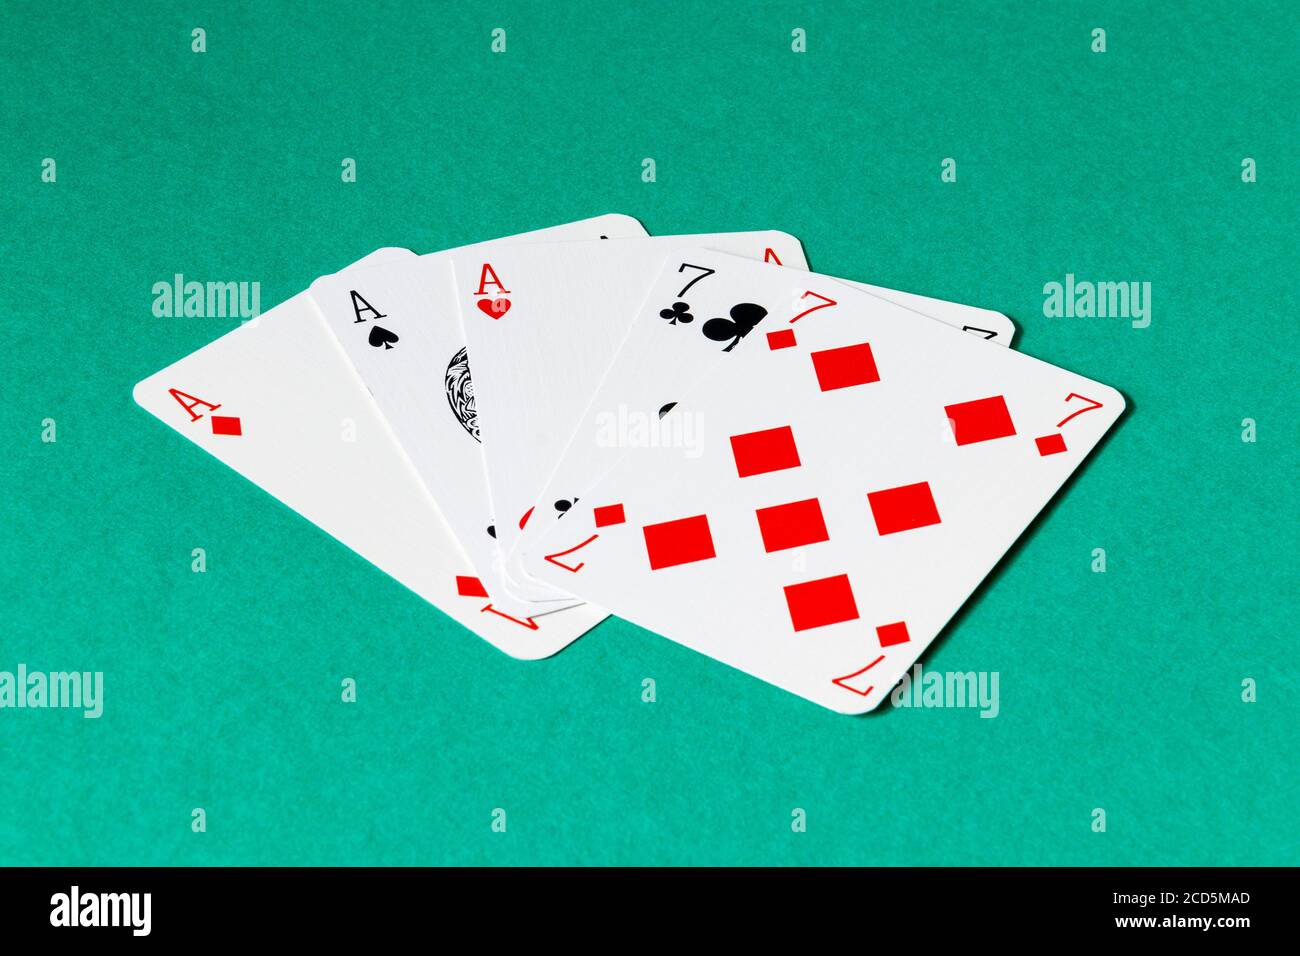 Ein volles Haus von Assen und Siebener in einem Spiel Von Poker Stockfoto